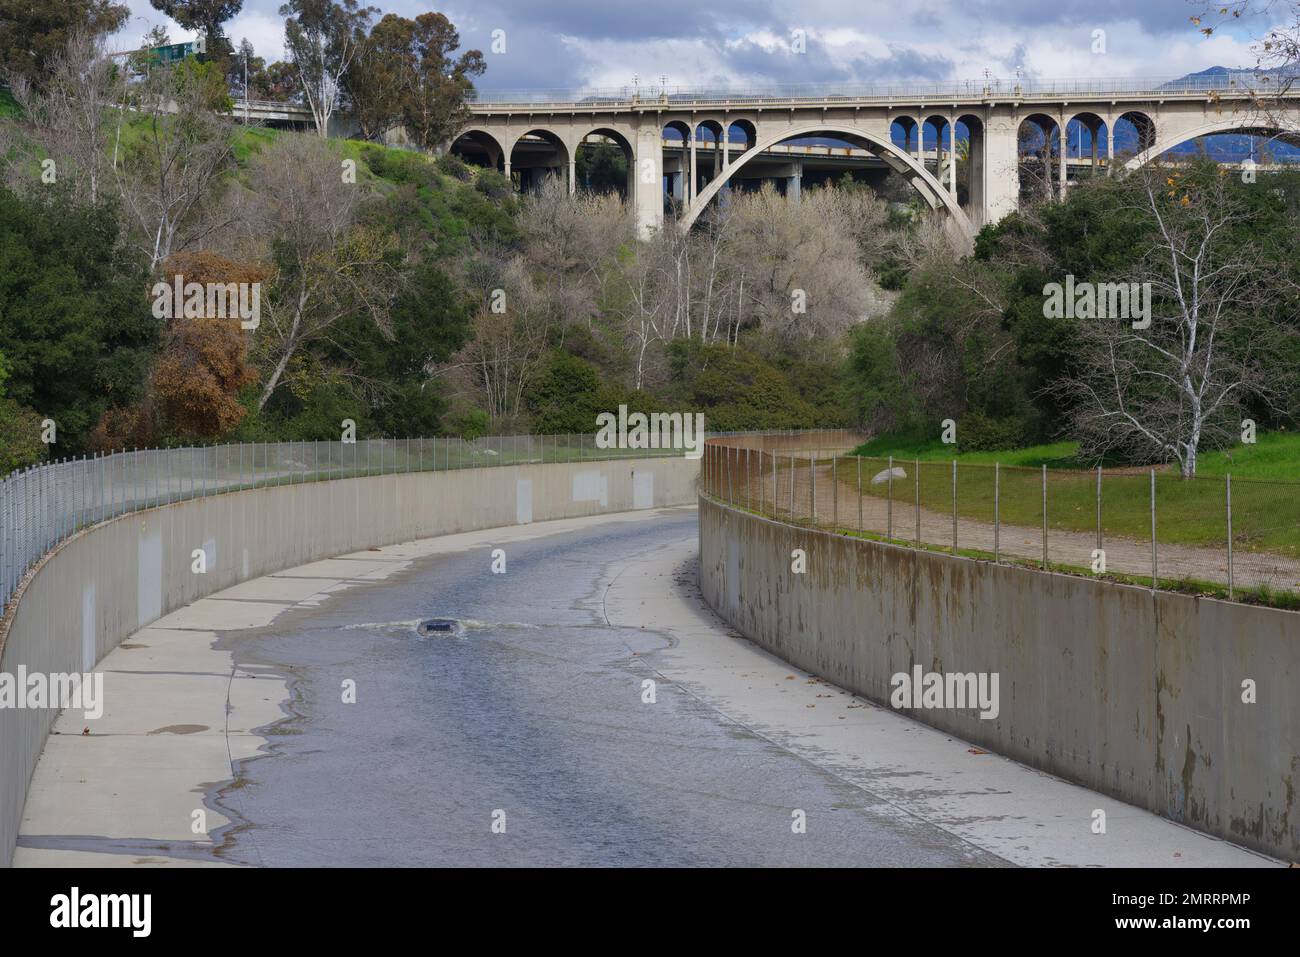 Le canal Arroyo Seco et le pont Colorado Street Bridge à Pasadena ont été montrés après plusieurs pluies d'hiver en Californie. Banque D'Images